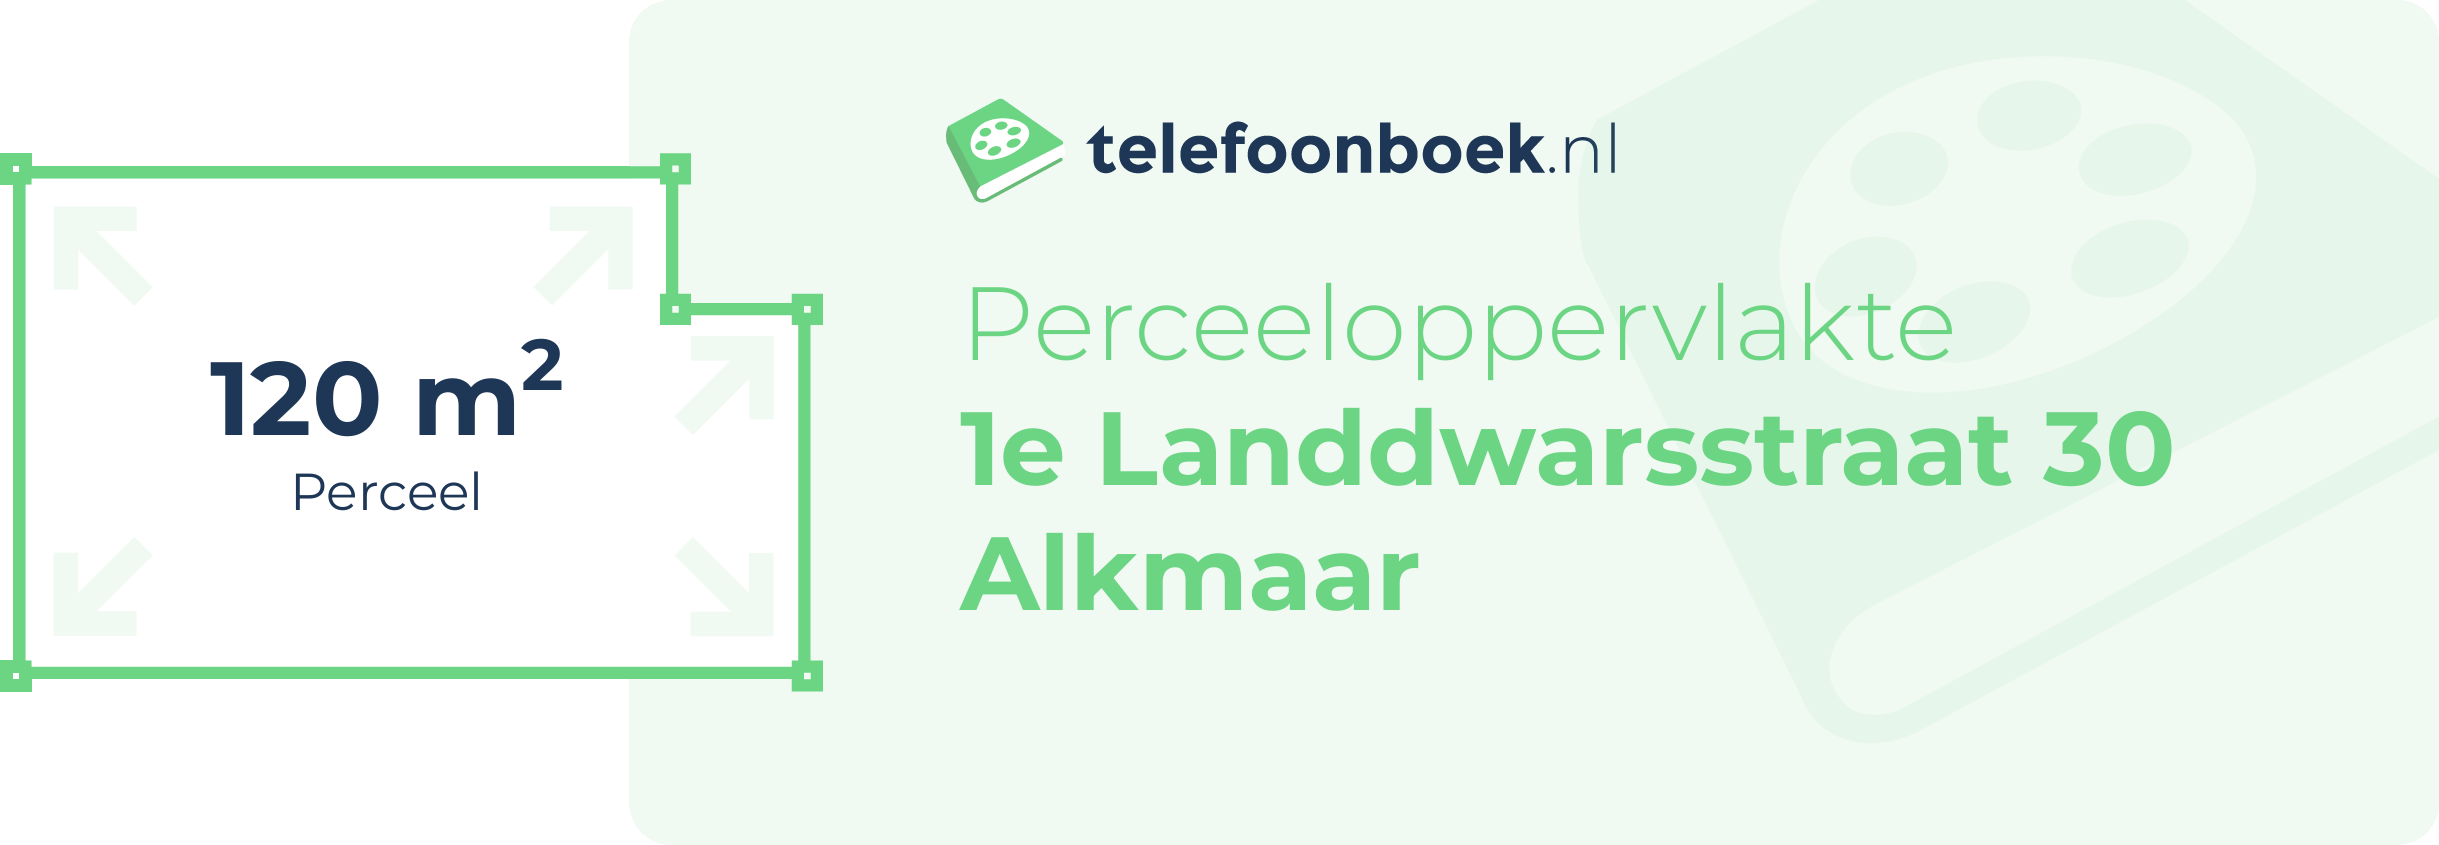 Perceeloppervlakte 1e Landdwarsstraat 30 Alkmaar